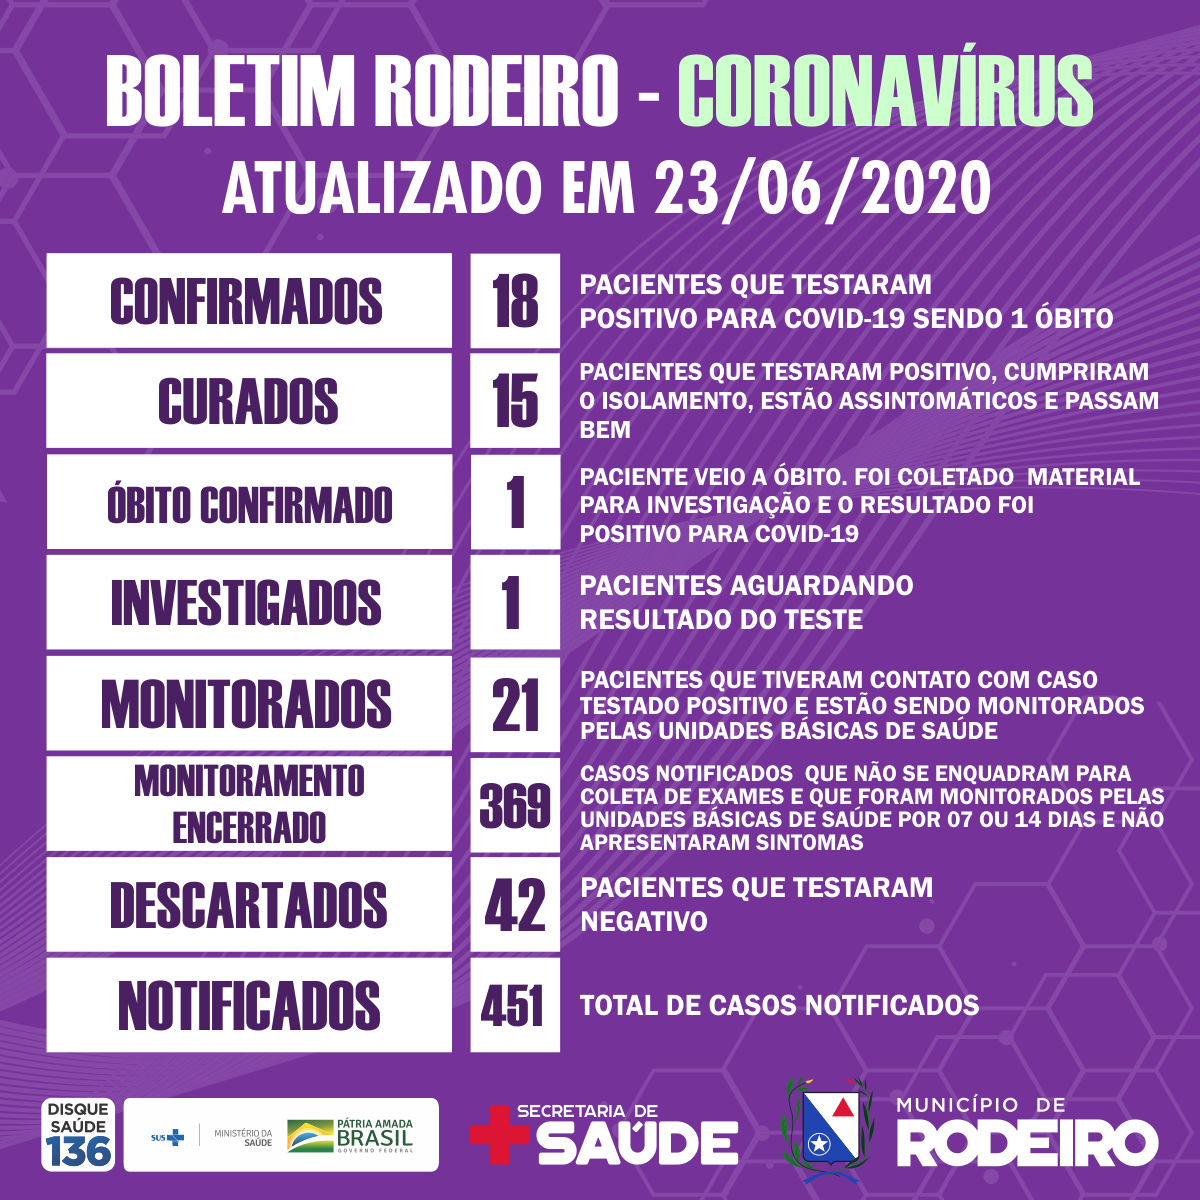 Boletim epidemiológico do Município de Rodeiro coronavírus, atualizado em 23/06/2020